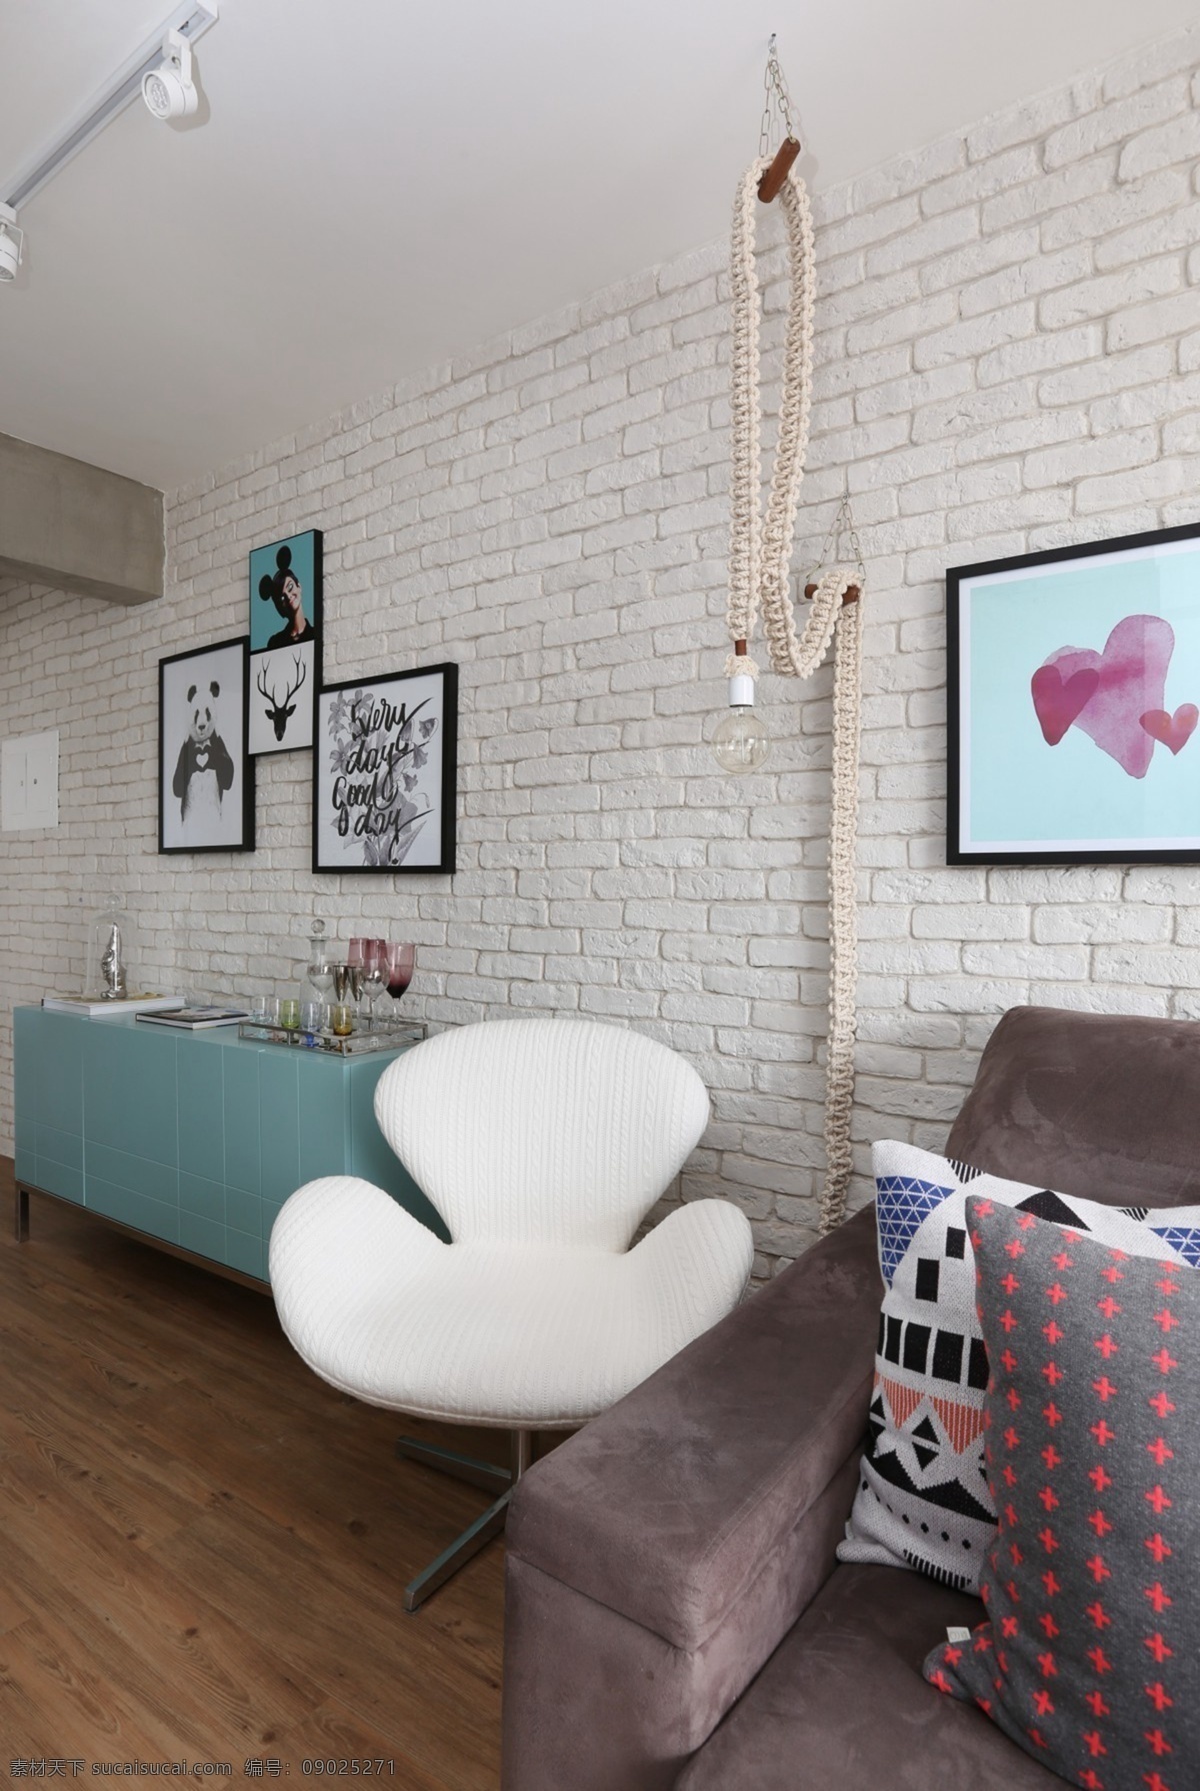 北欧 创意 沙发 背景 墙 设计图 家居 家居生活 室内设计 装修 室内 家具 装修设计 环境设计 时尚 背景墙